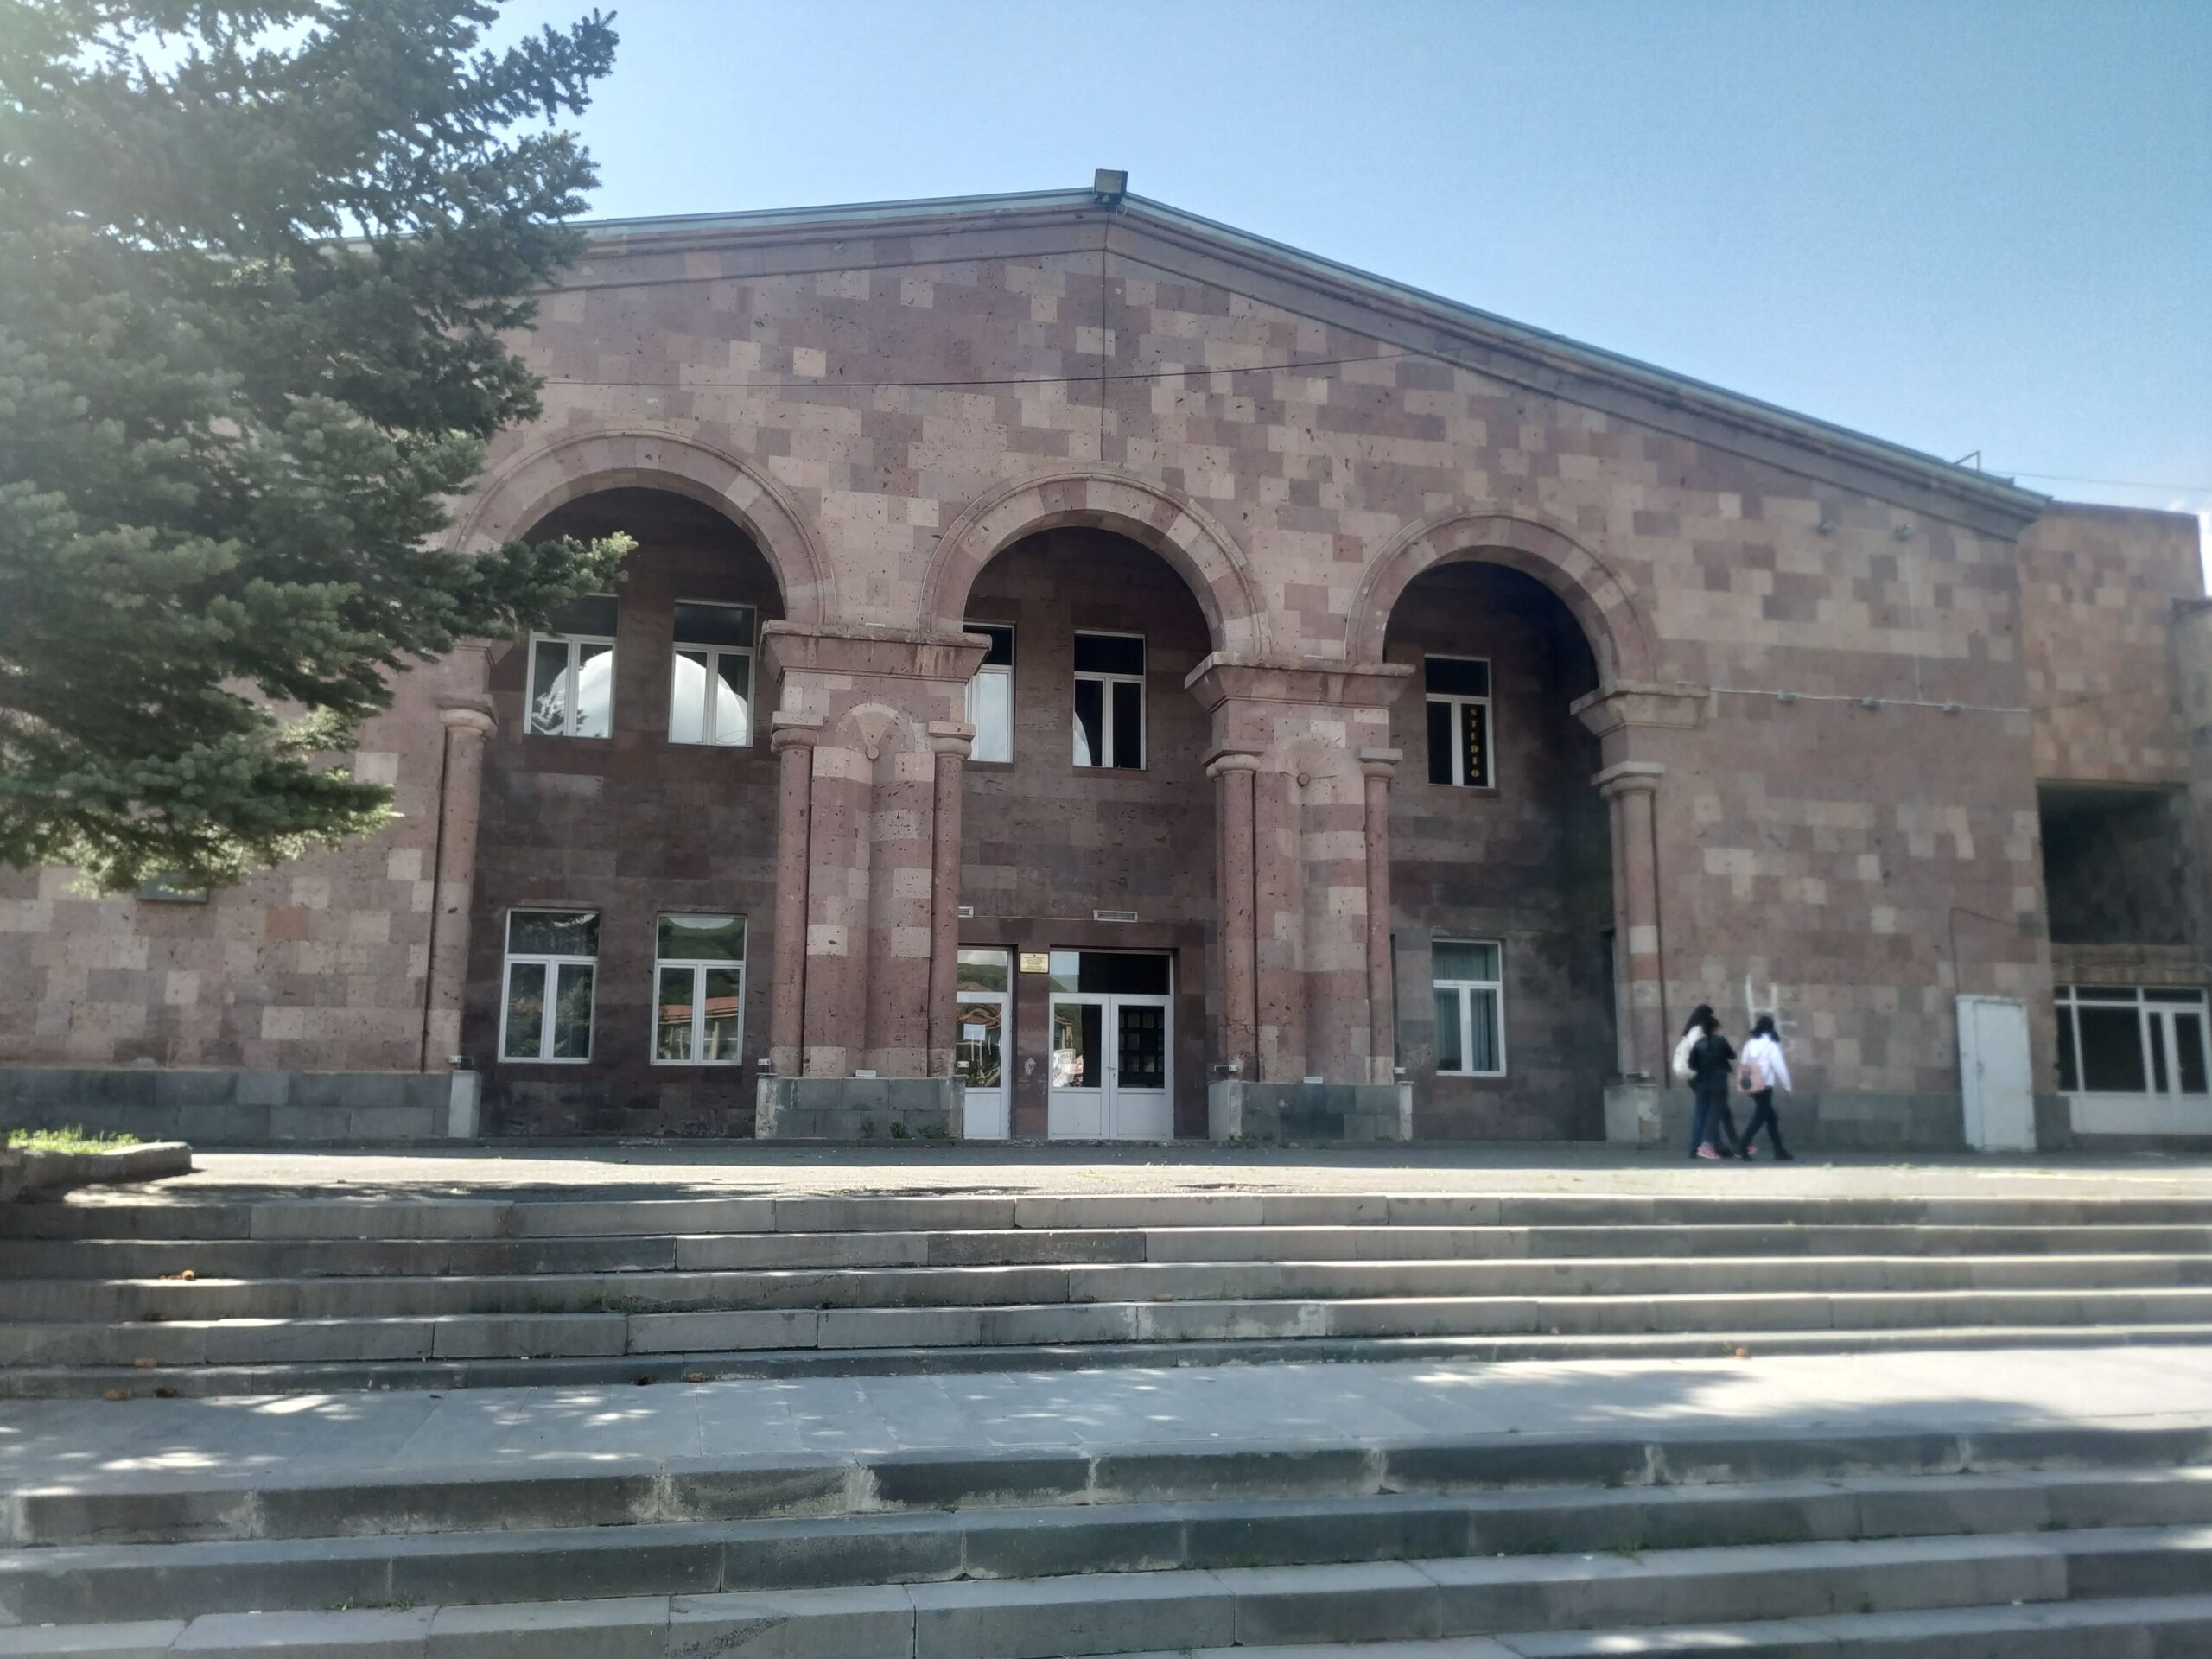 Չարենցավանի ակումբի շենքը (այժմ՝ Կ. Դեմիրճյանի անվան մշակույթի տուն)